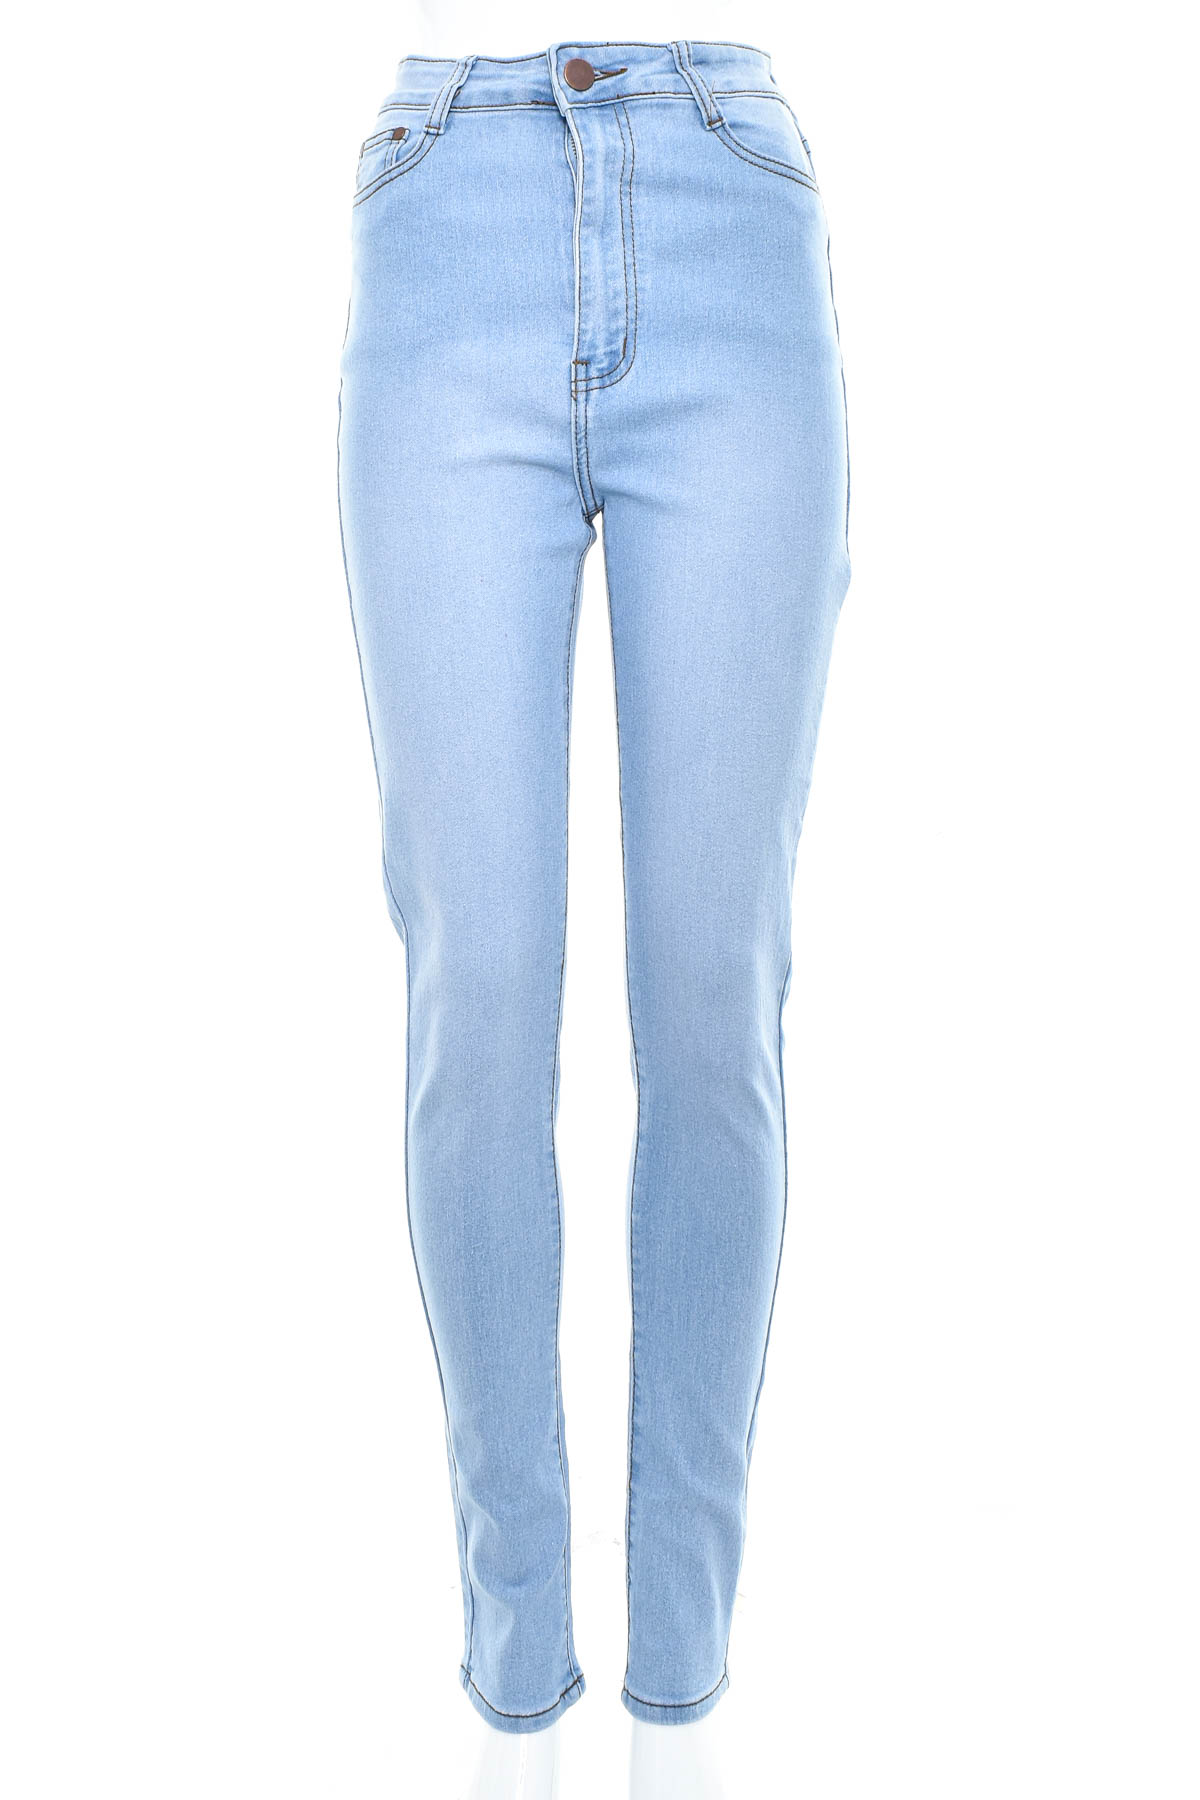 Girl's jeans - BOB Jeans - 0